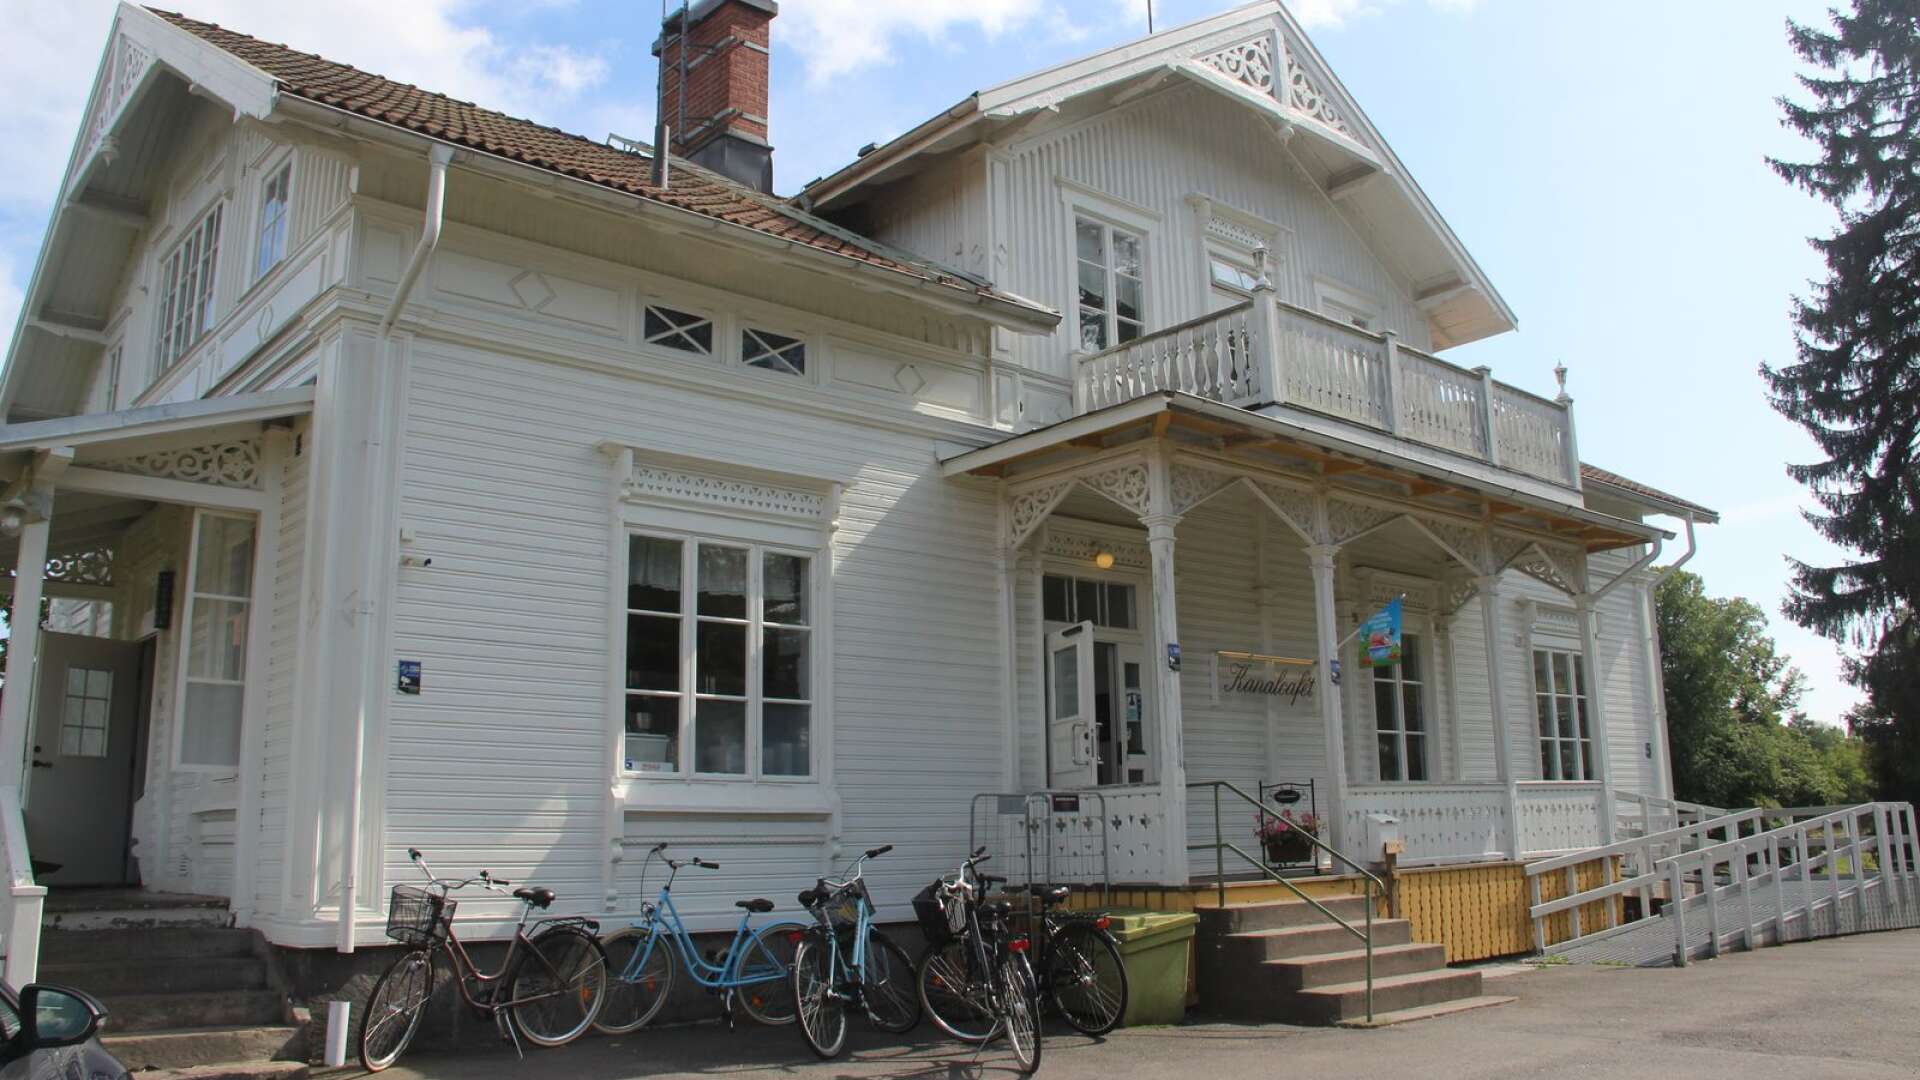 Kanalcaféet vid Säffle kanal är nu ute till försäljning.